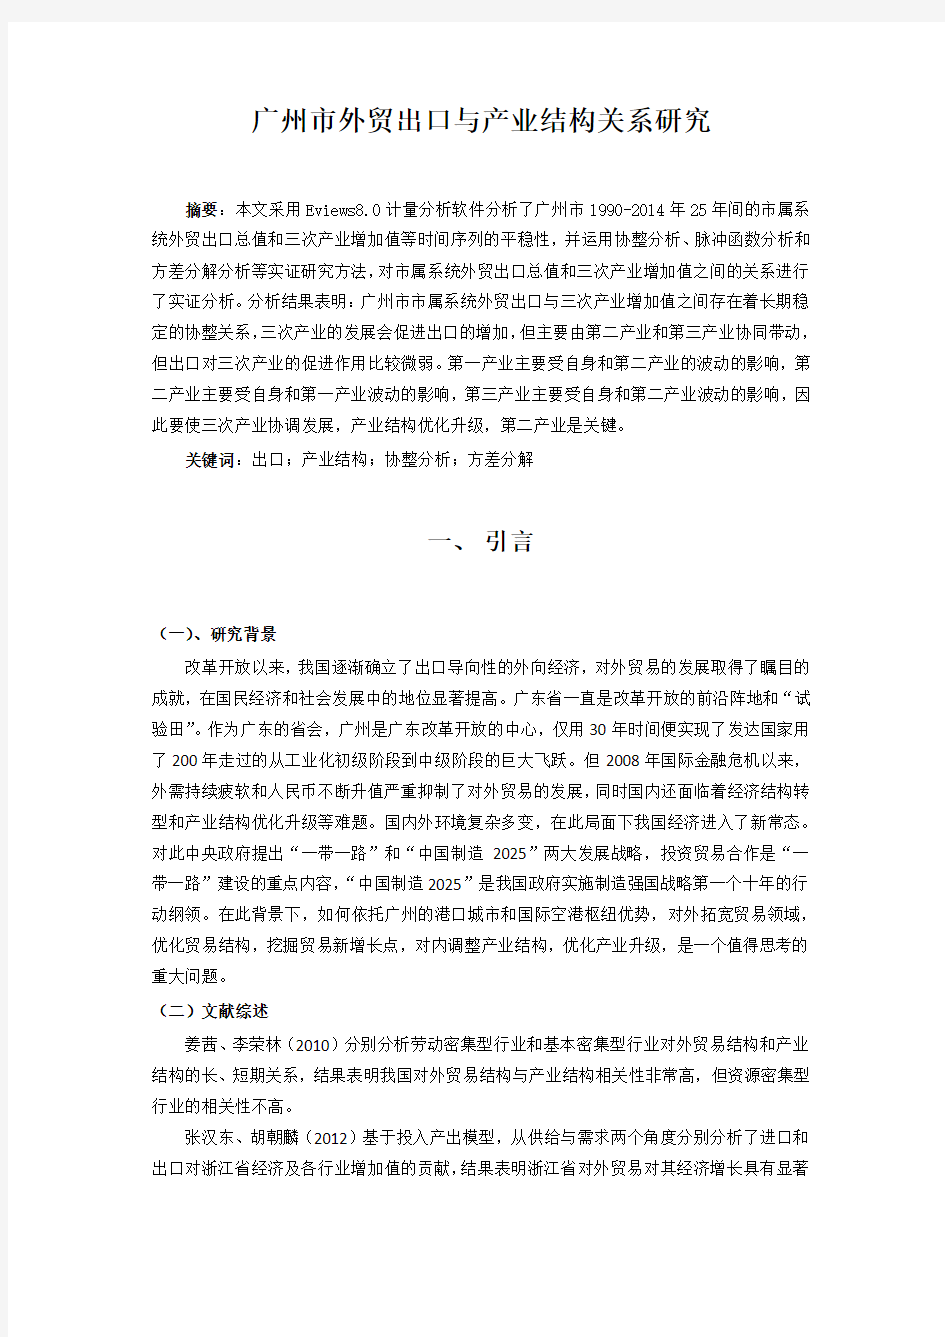 广州市外贸出口与产业结构关系研究